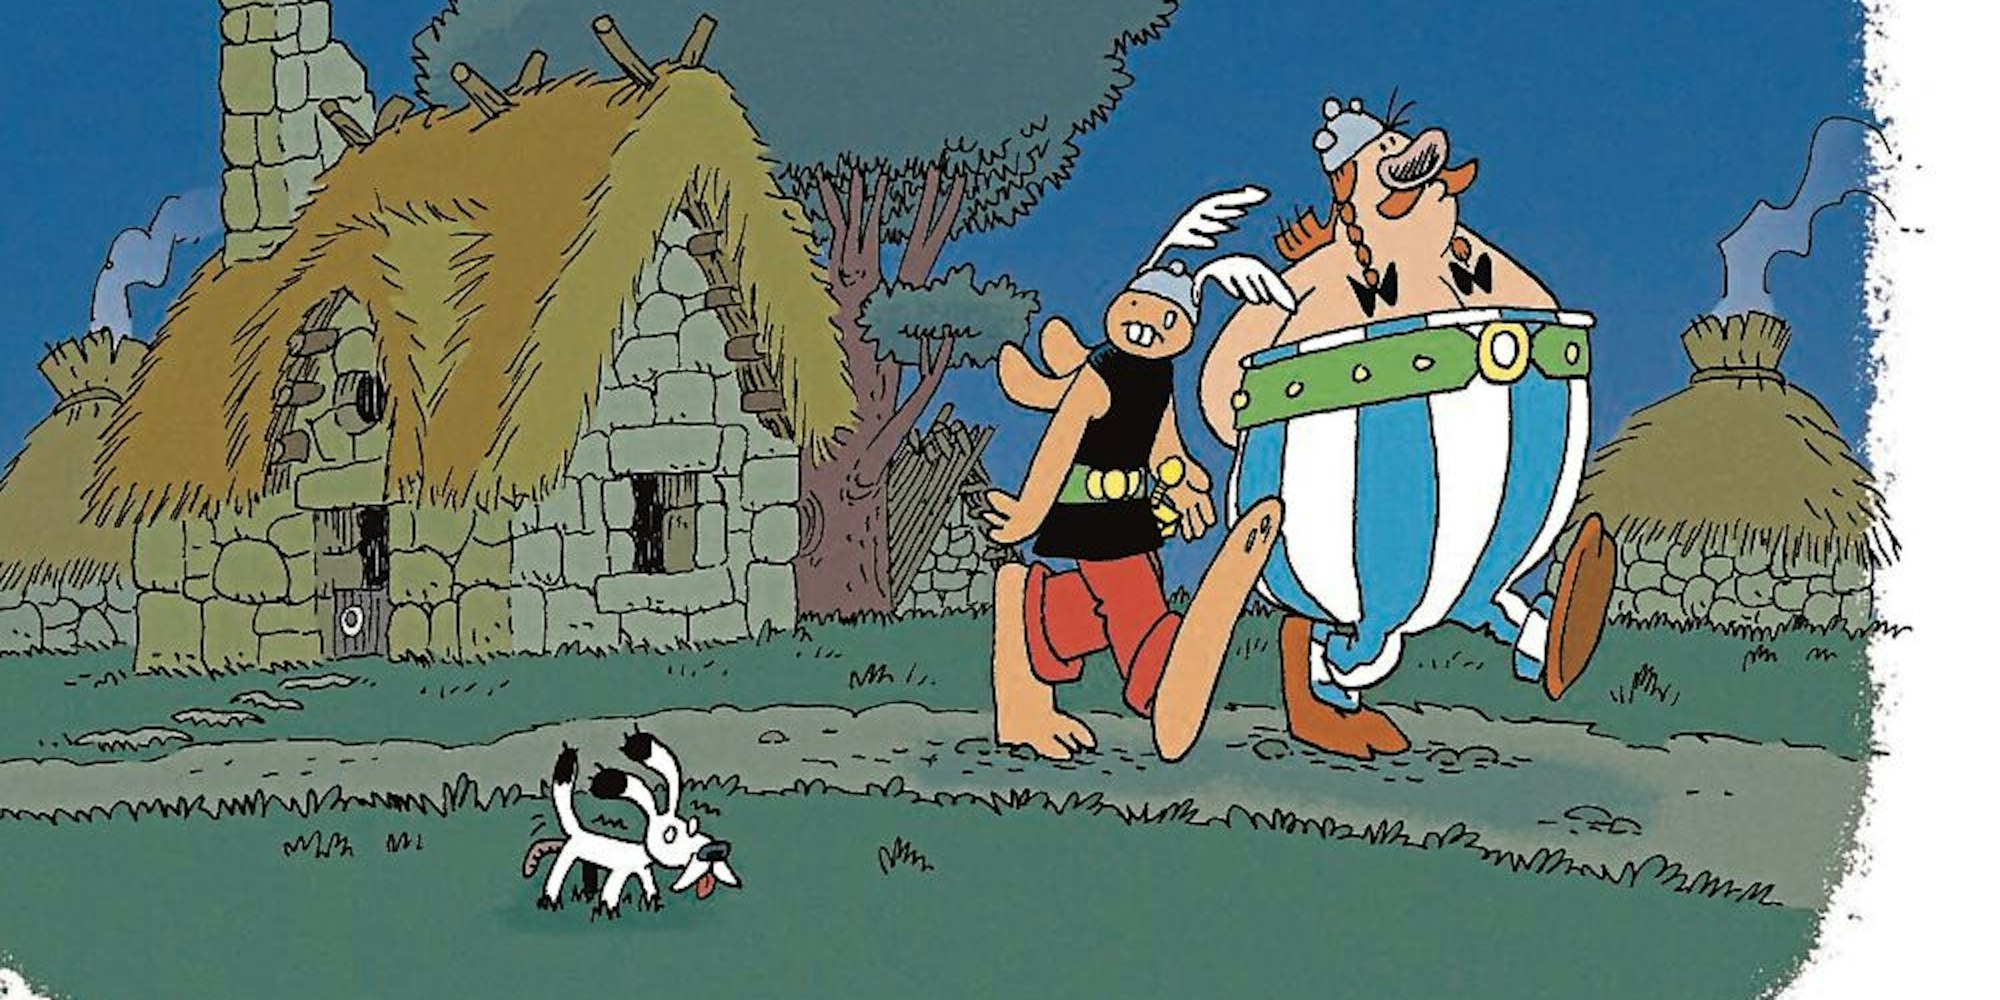 Herr Hase alias Asterix, Obelix und Hund Idefix spazieren durch ihr Dorf 